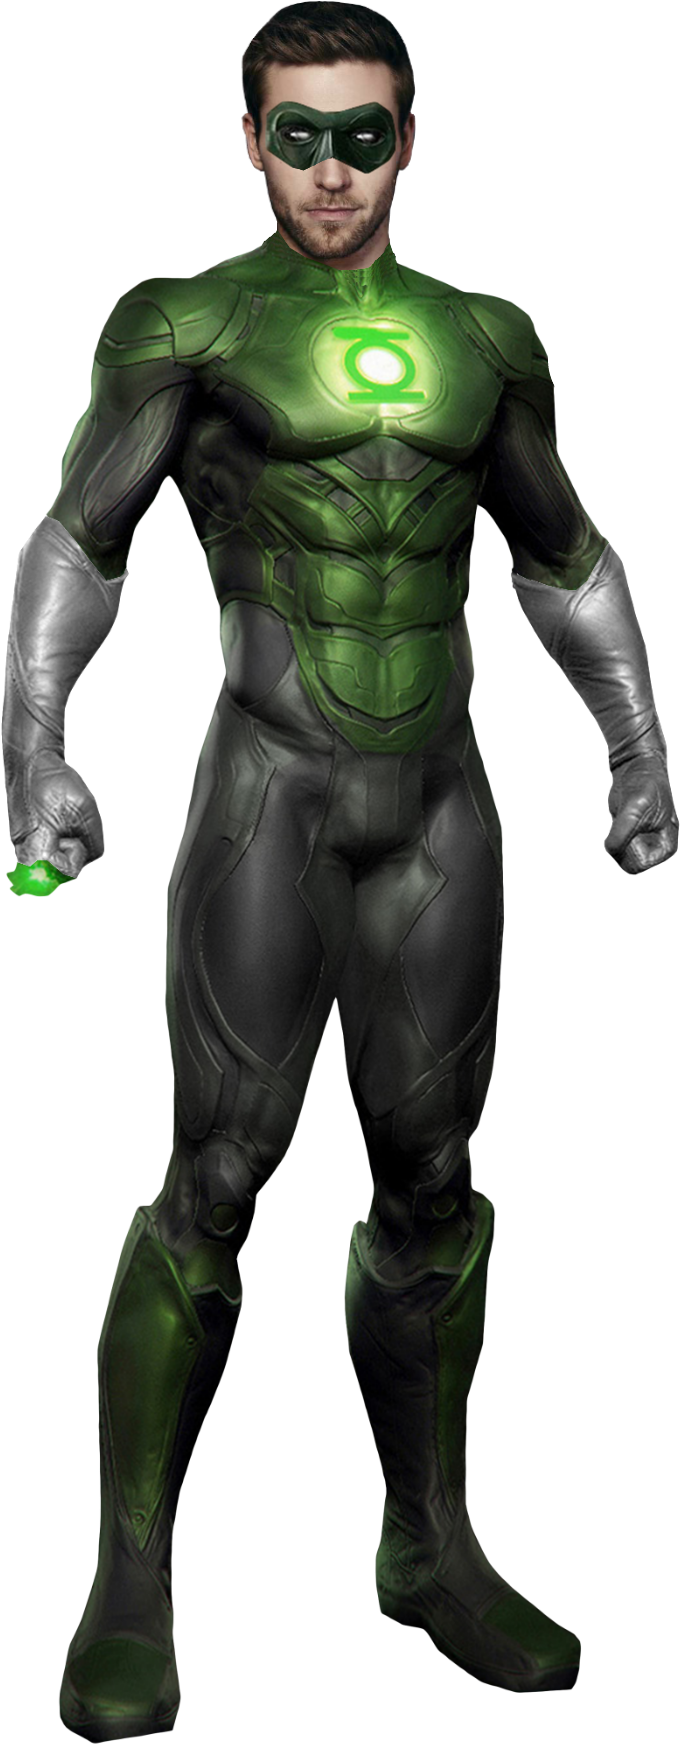 Green Lantern PNG Image HD